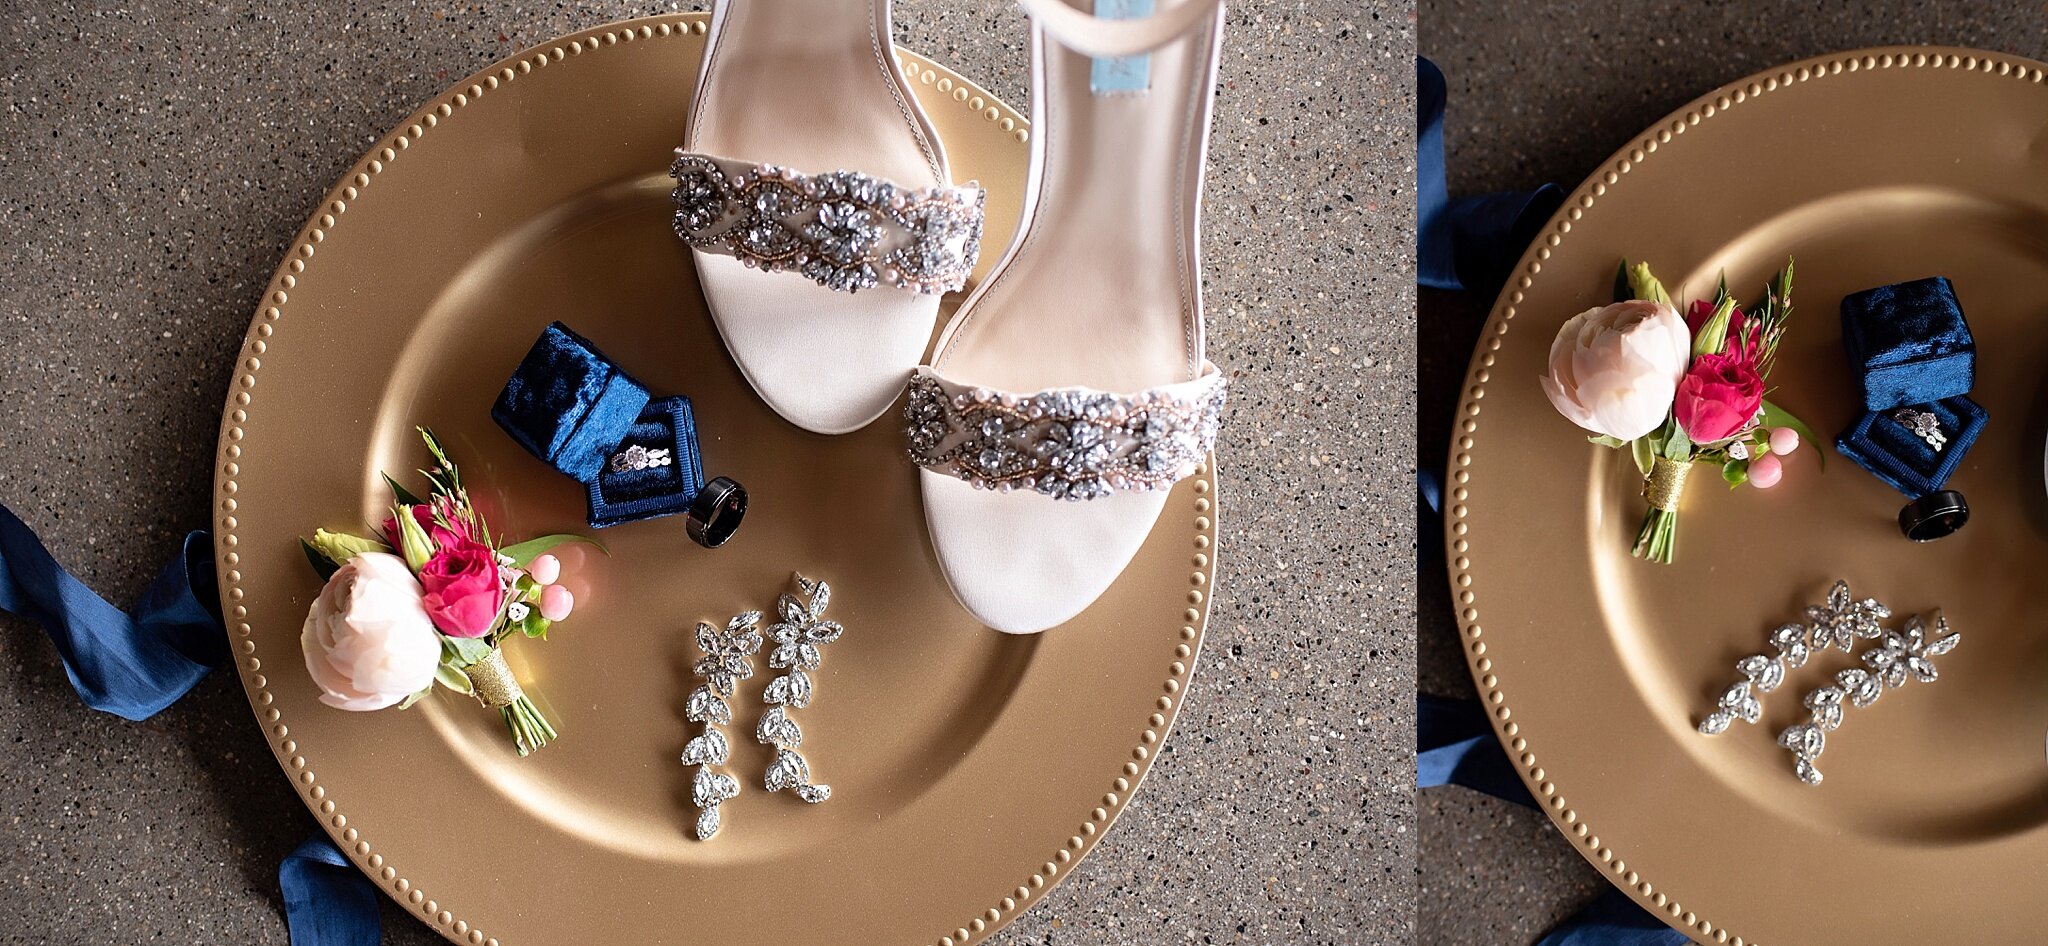 betsey johnson wedding shoes jeweled heels magenta wedding bridal bouquet